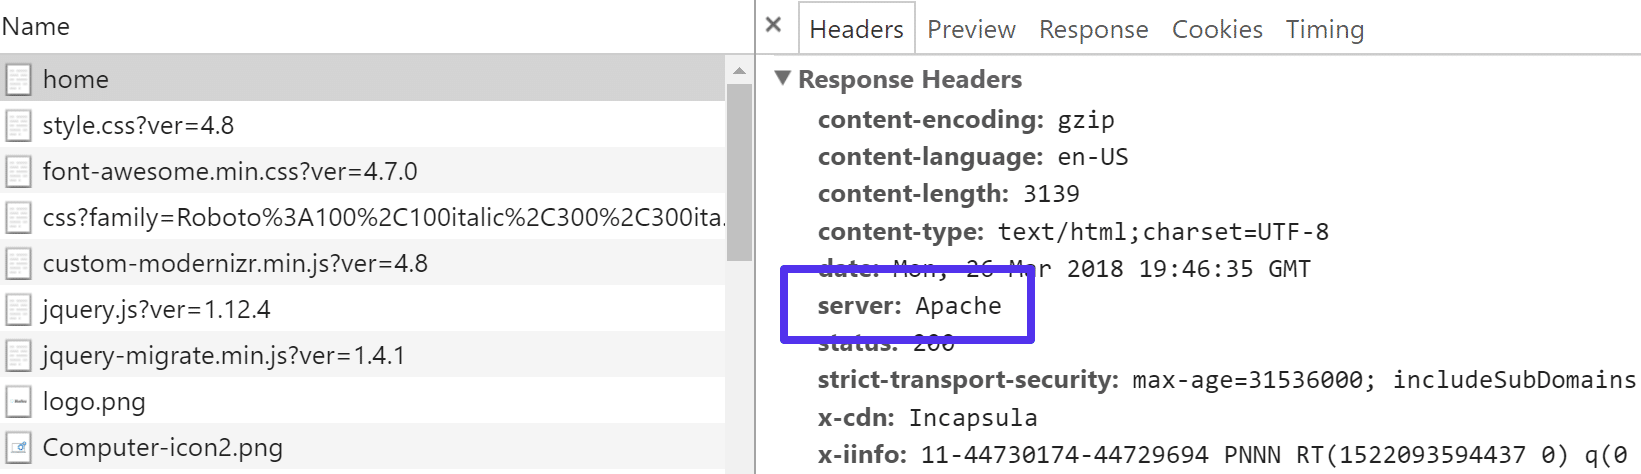 Cabeçalho HTTP do Apache